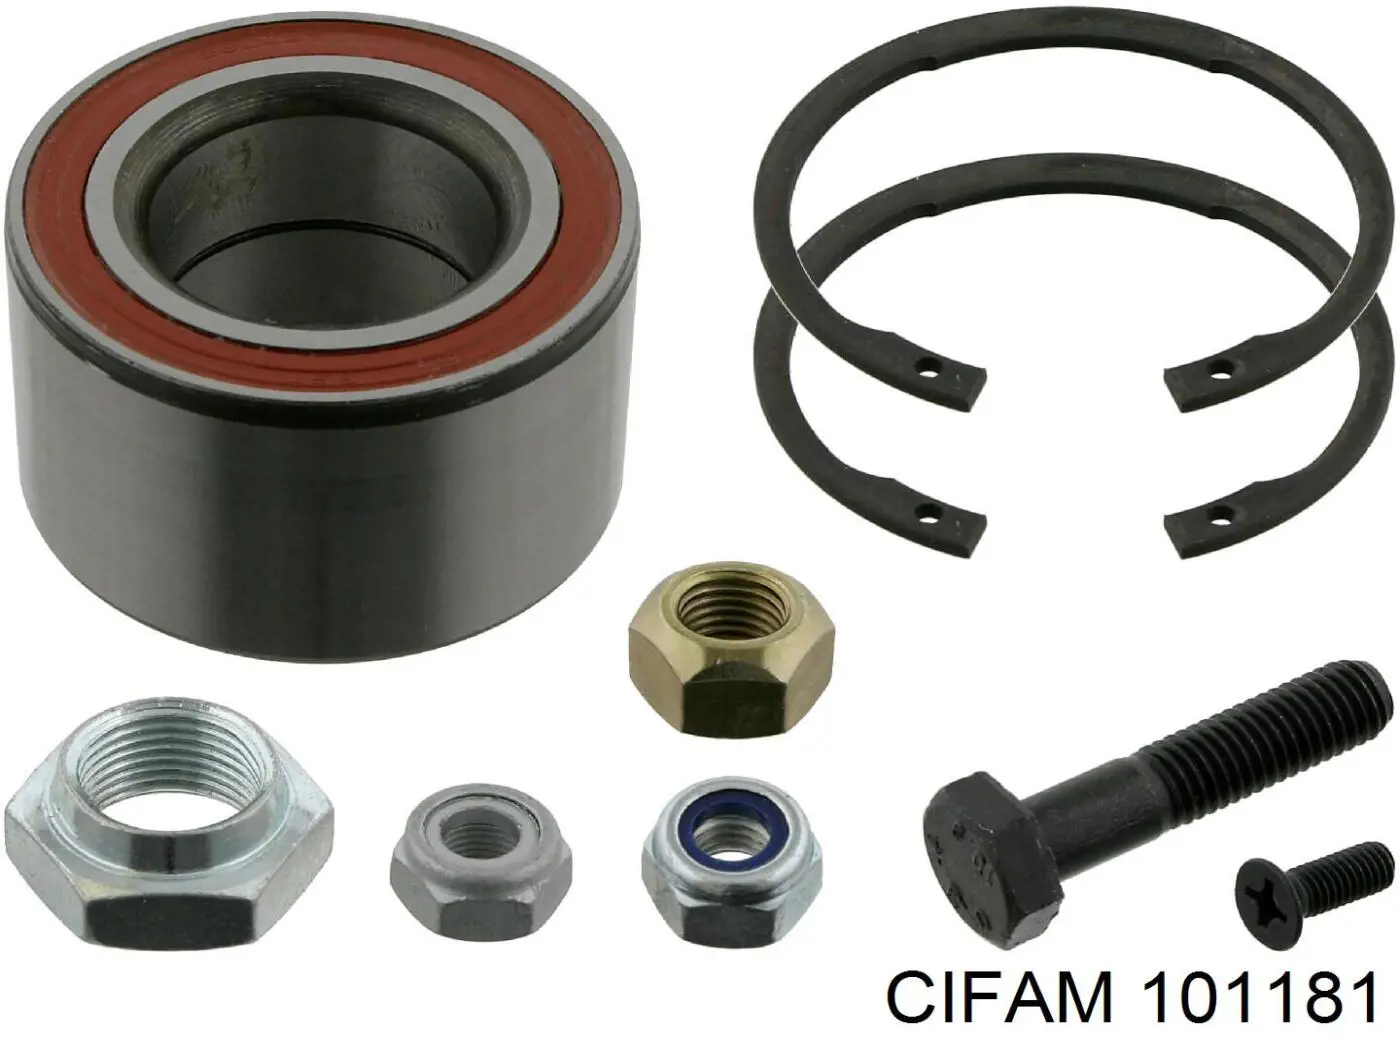 101-181 Cifam cilindro de freno de rueda trasero